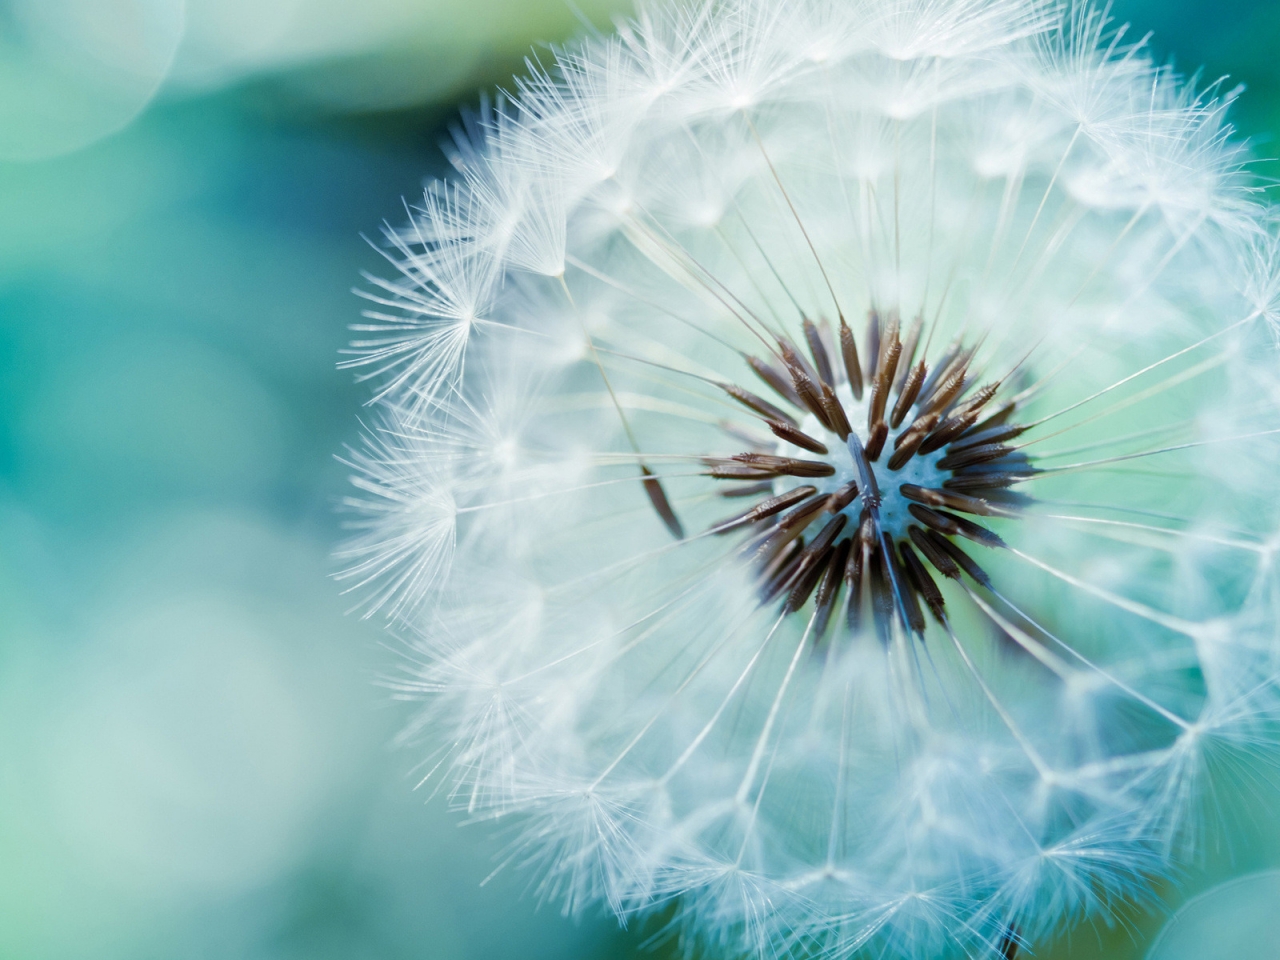 Dandelion Flower for 1280 x 960 resolution